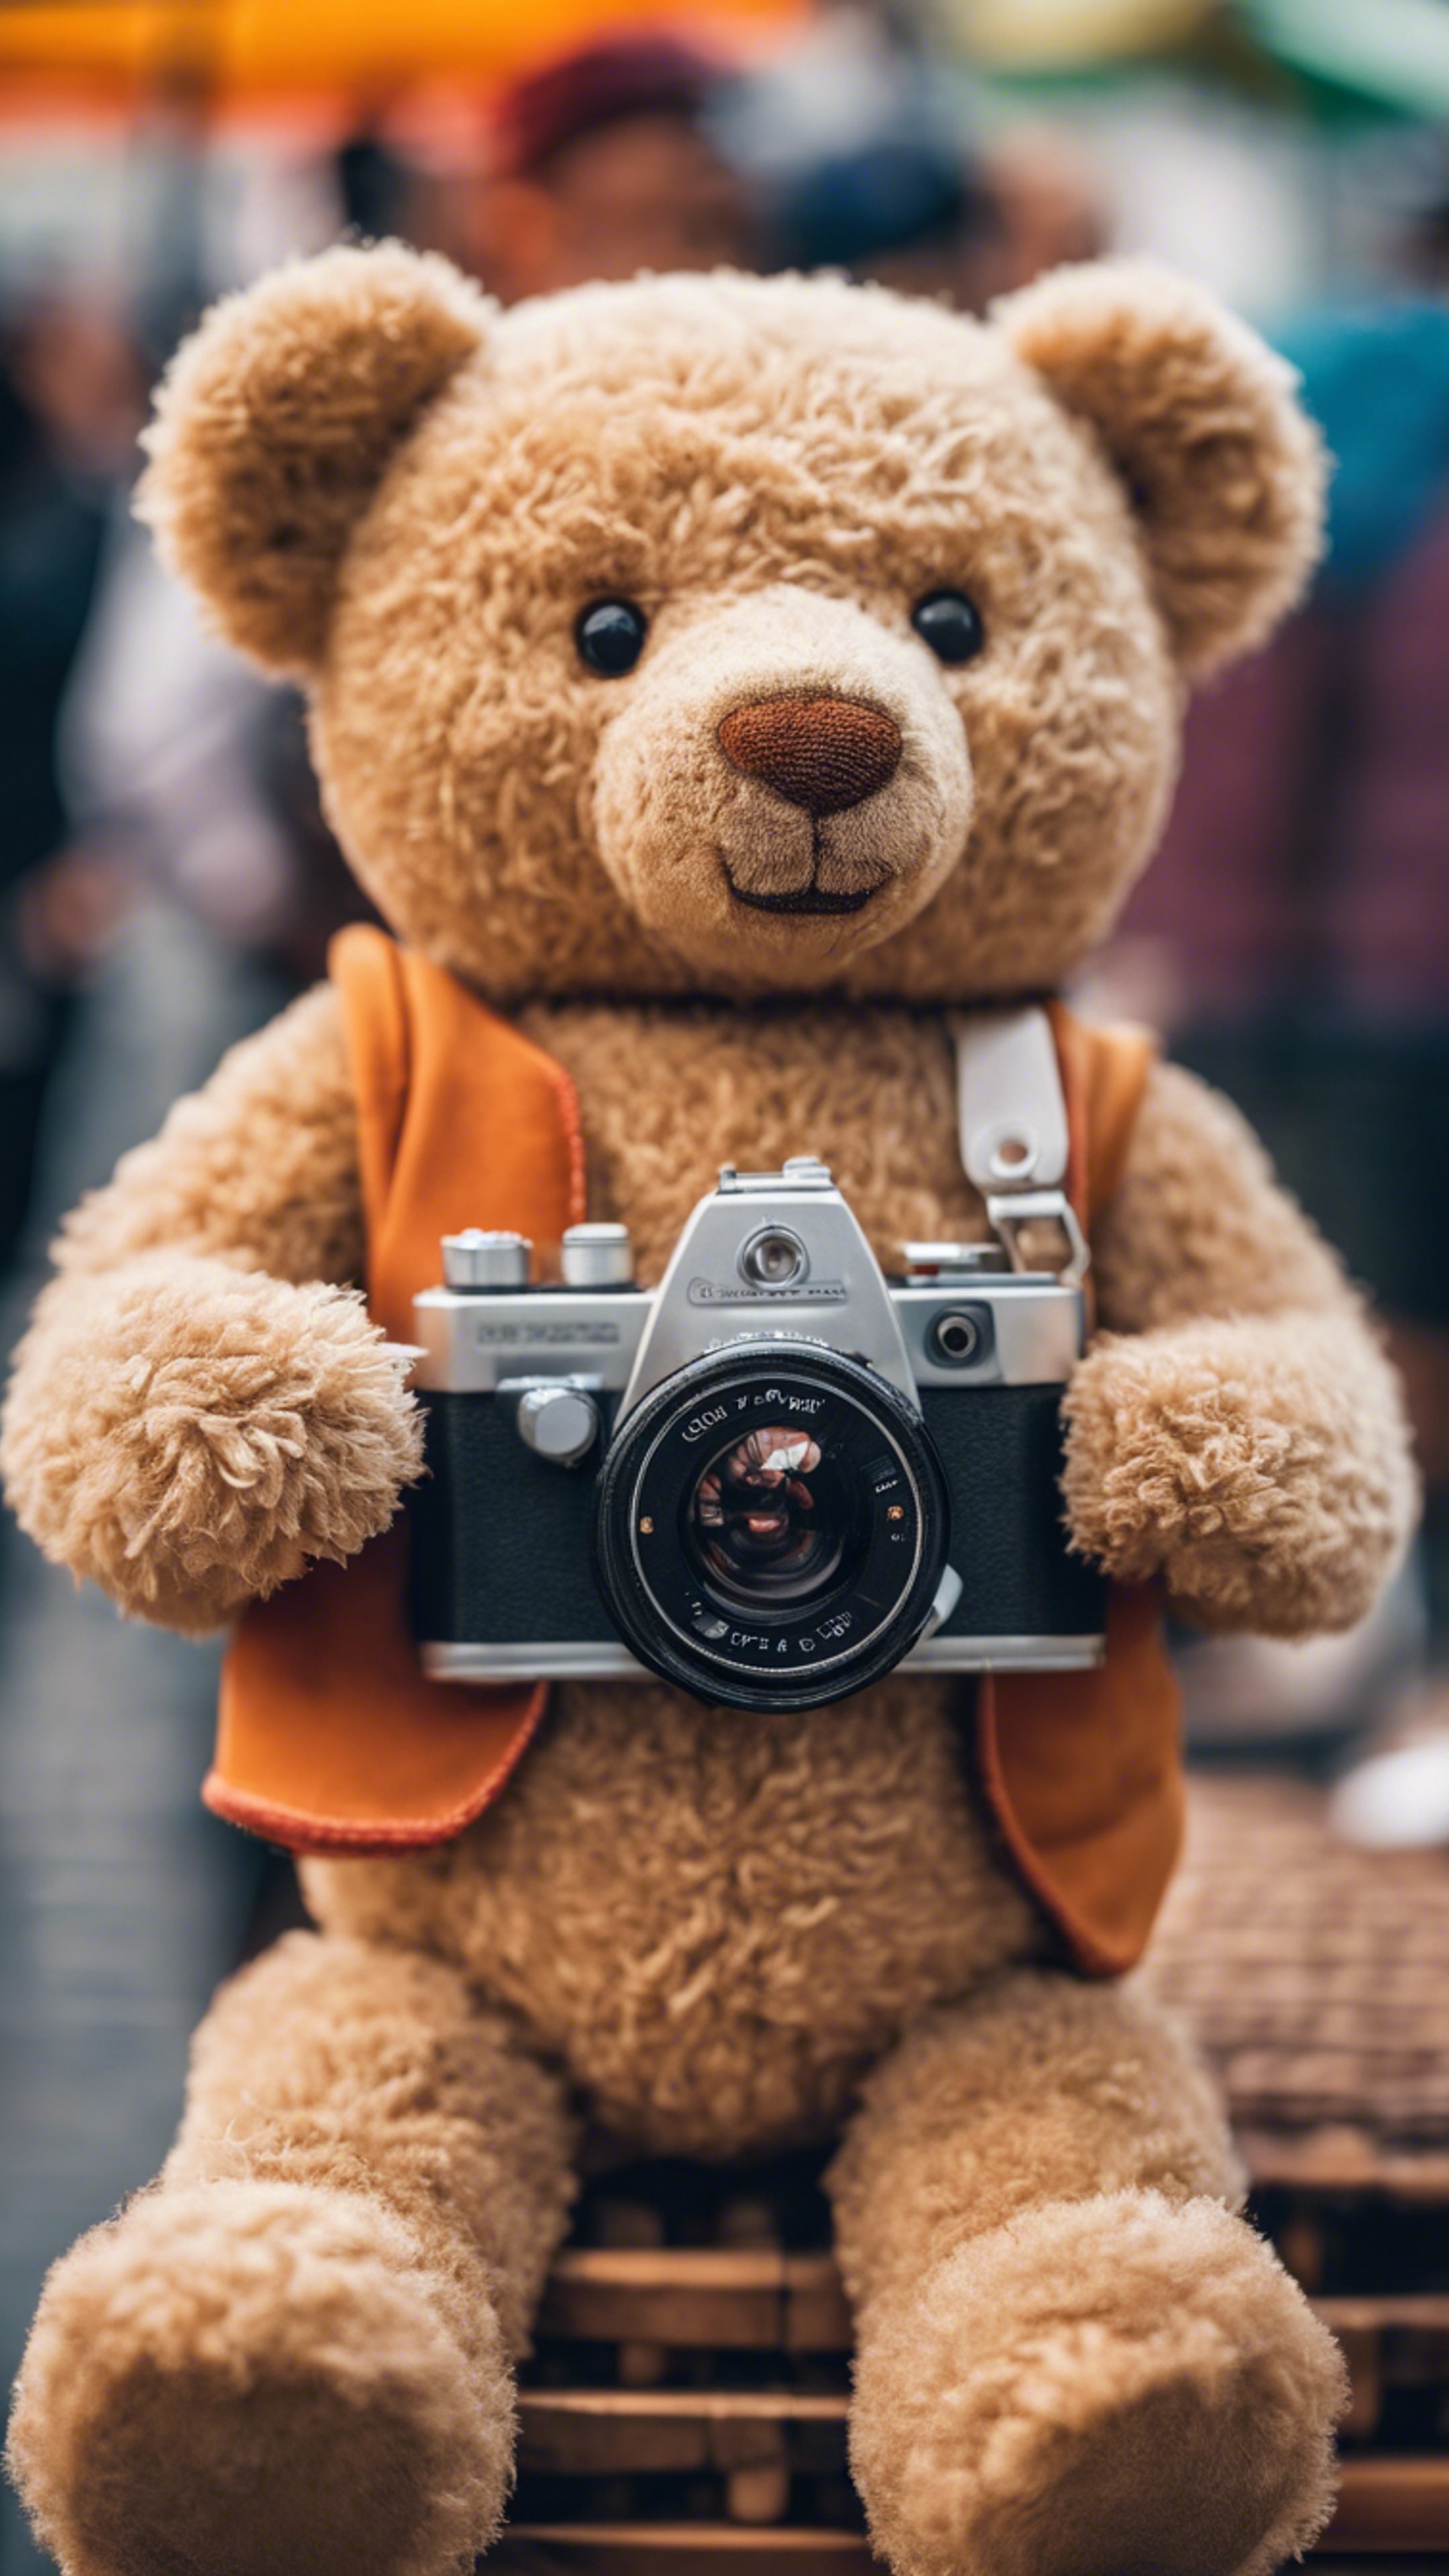 A teddy bear photography hobbyist, holding a toy camera, stood amidst a vibrant street fair. Tapéta[6bbb7c06ef4c4008bbb6]